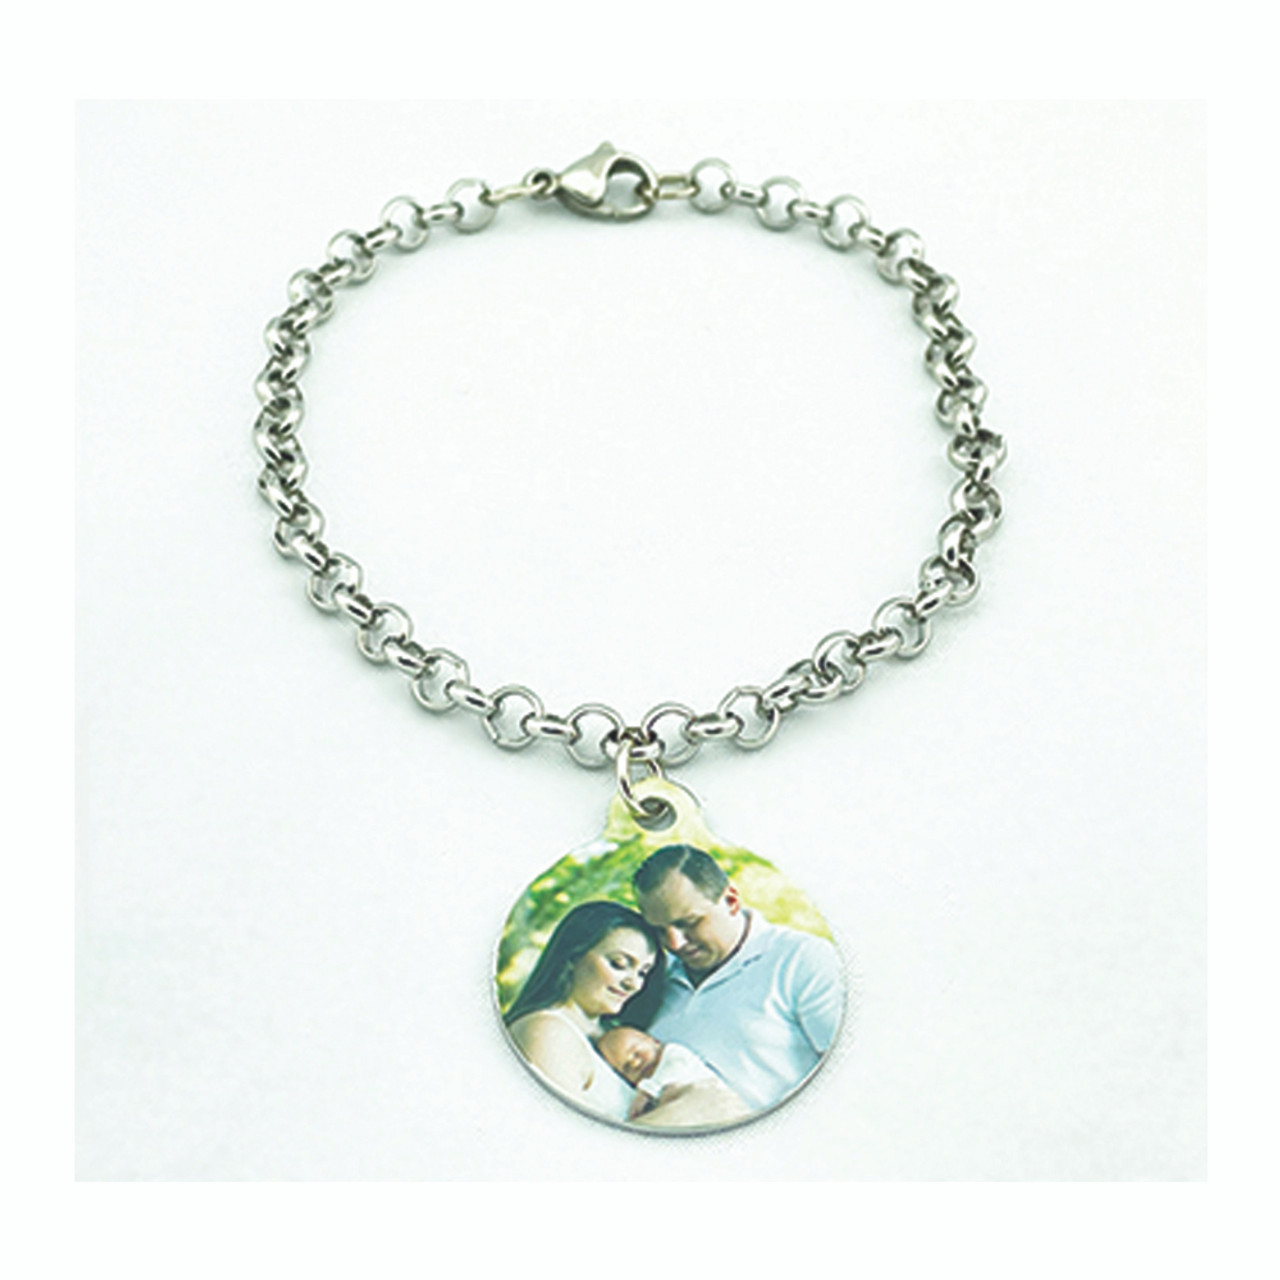 Custom Engraved Birthstone Charm Bracelets for Women